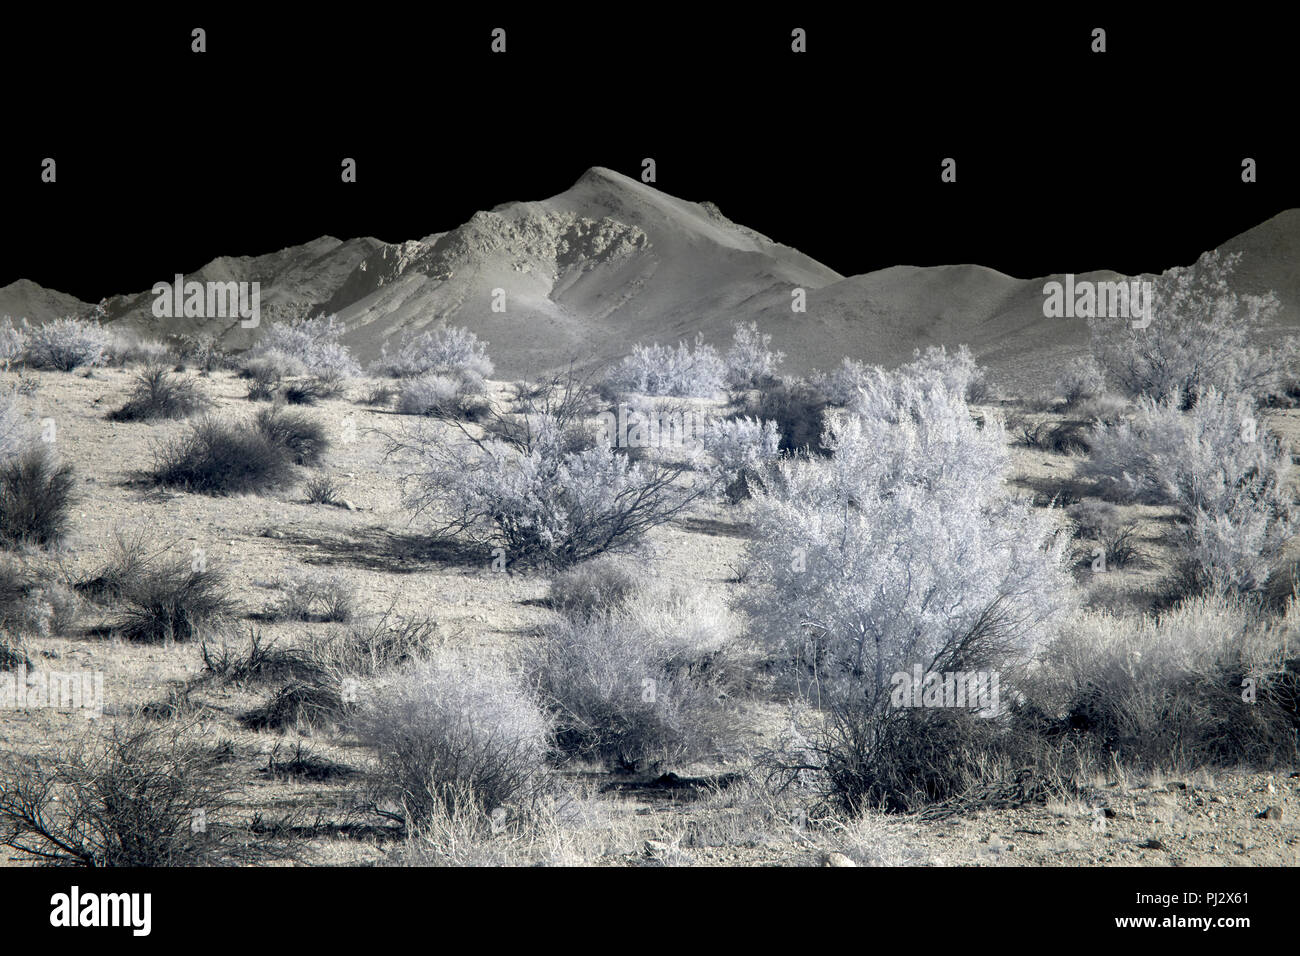 Vallata desertica con montagne sotto un cielo nero. Foto Stock